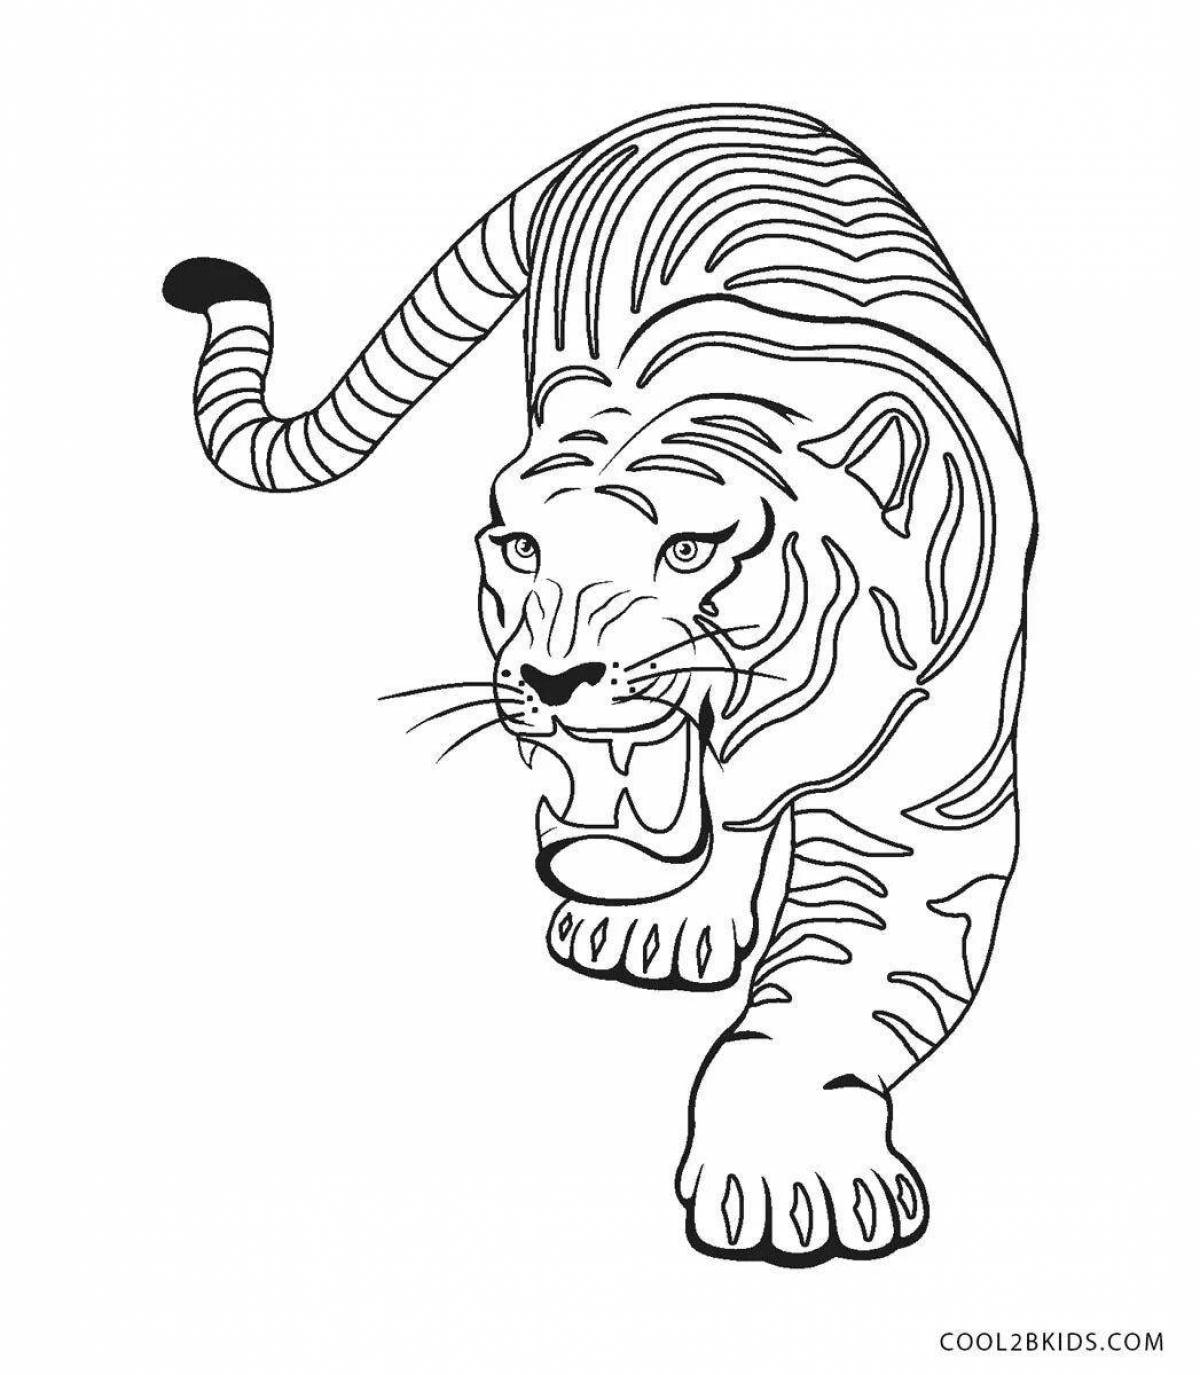 Великолепный рисунок тигренка